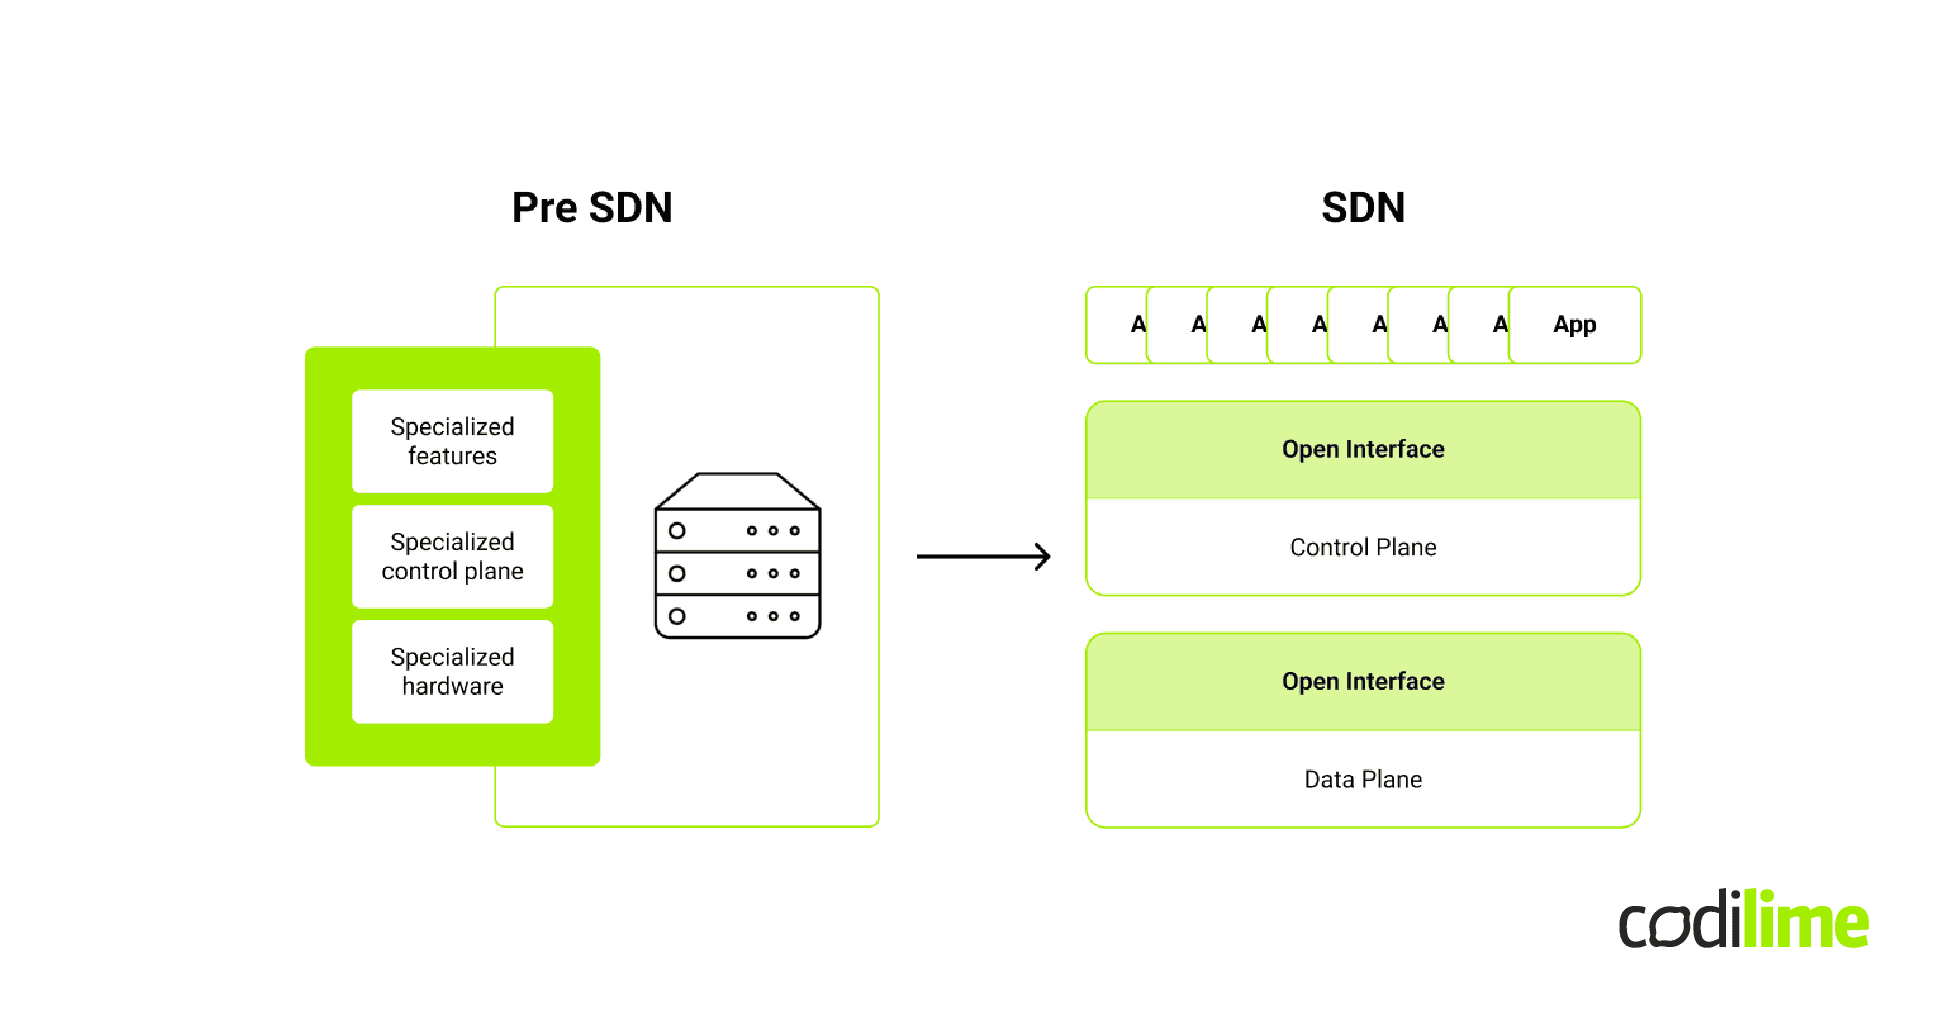 Software defined network evolution